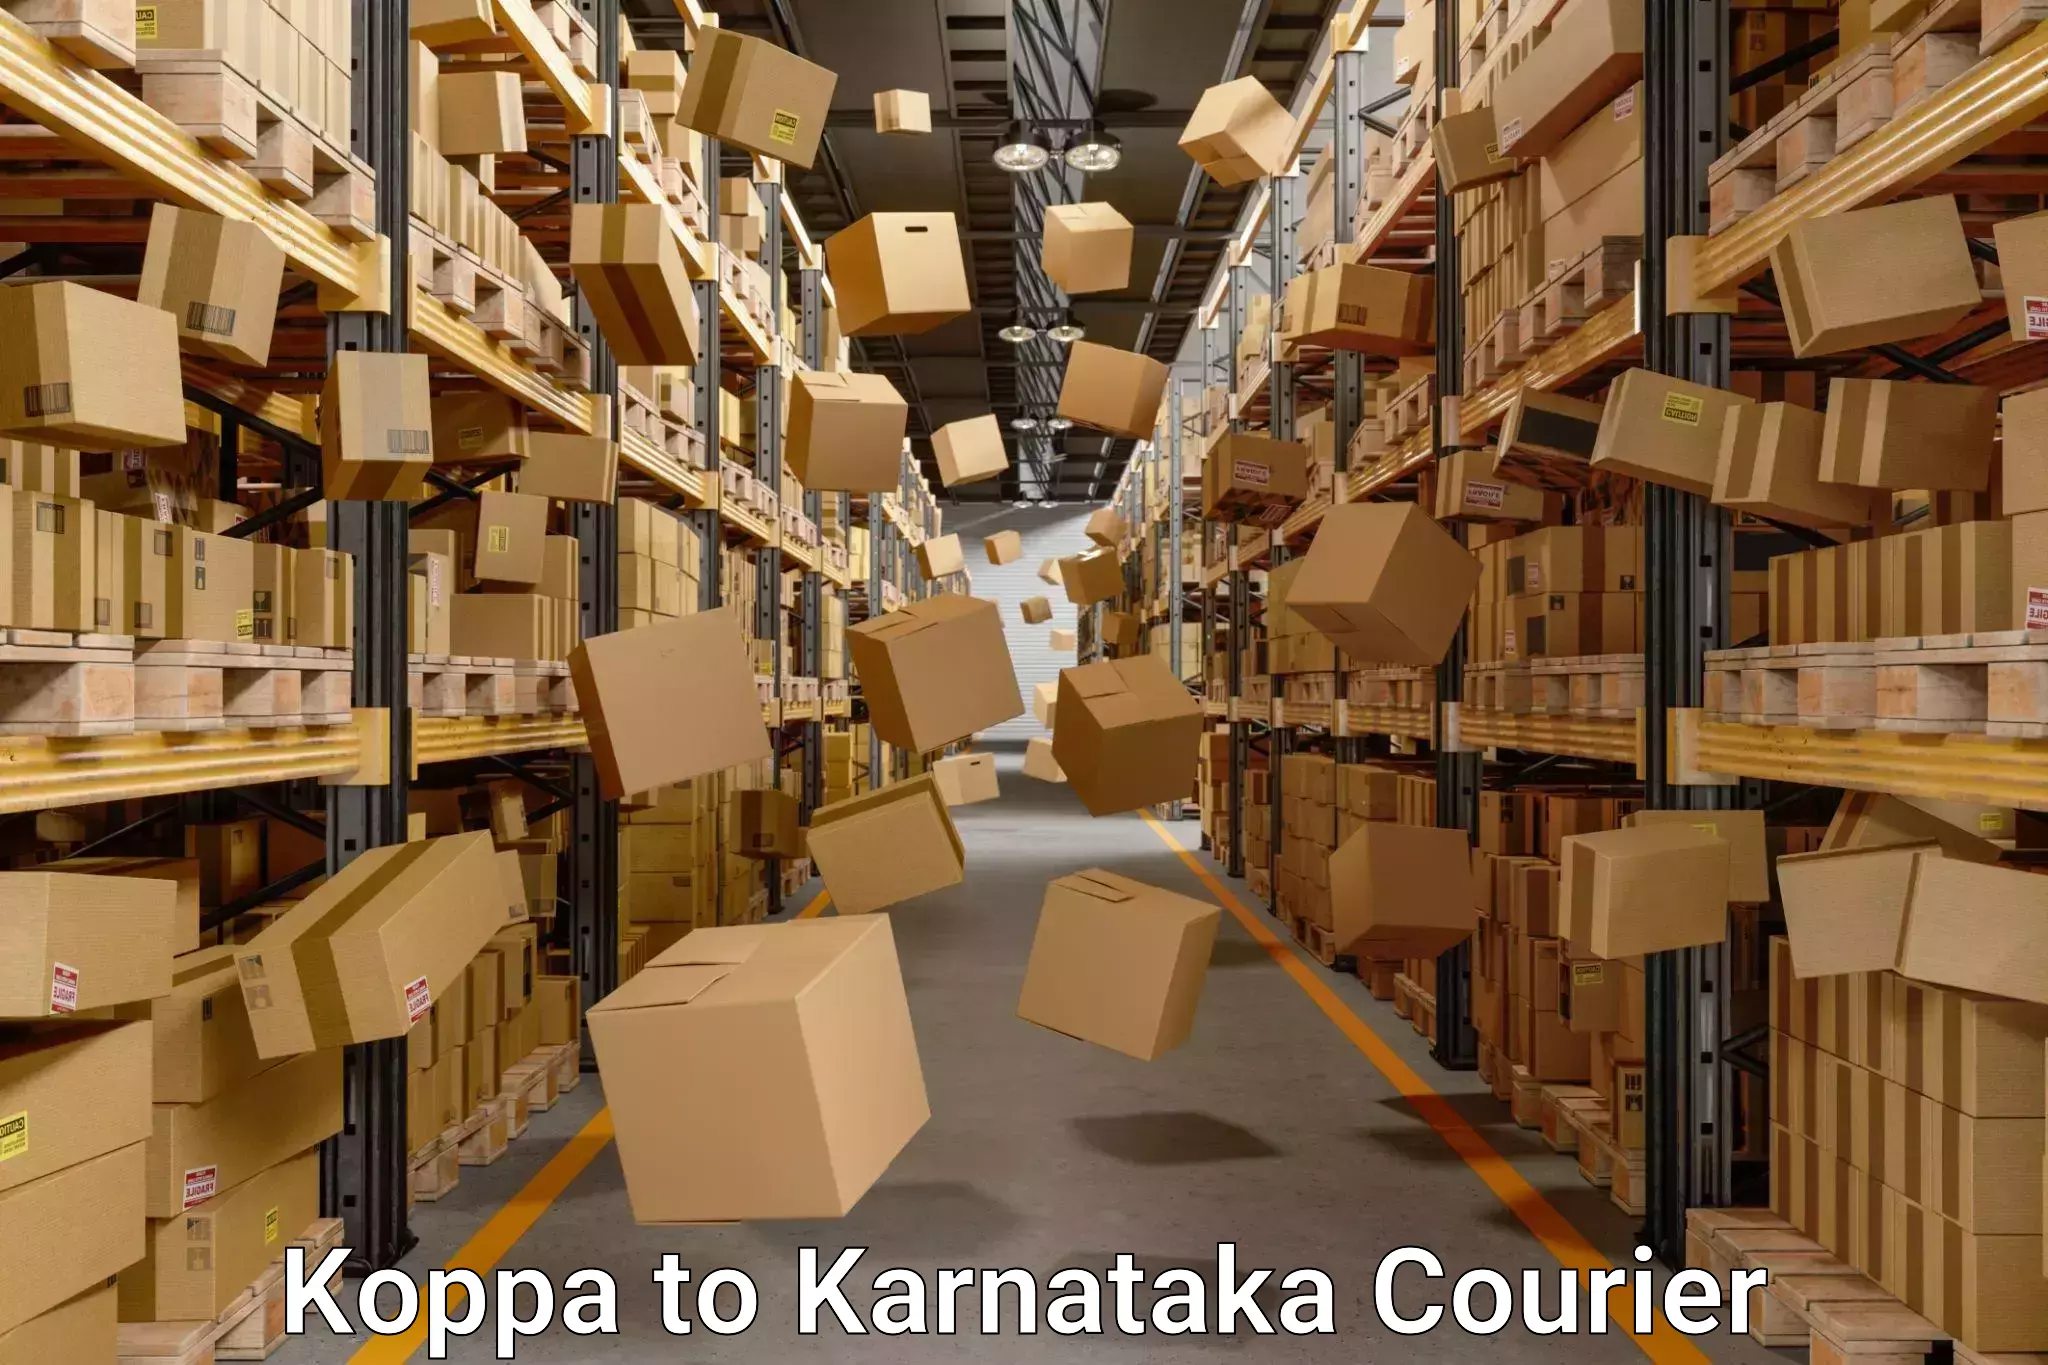 Professional packing services Koppa to Karnataka